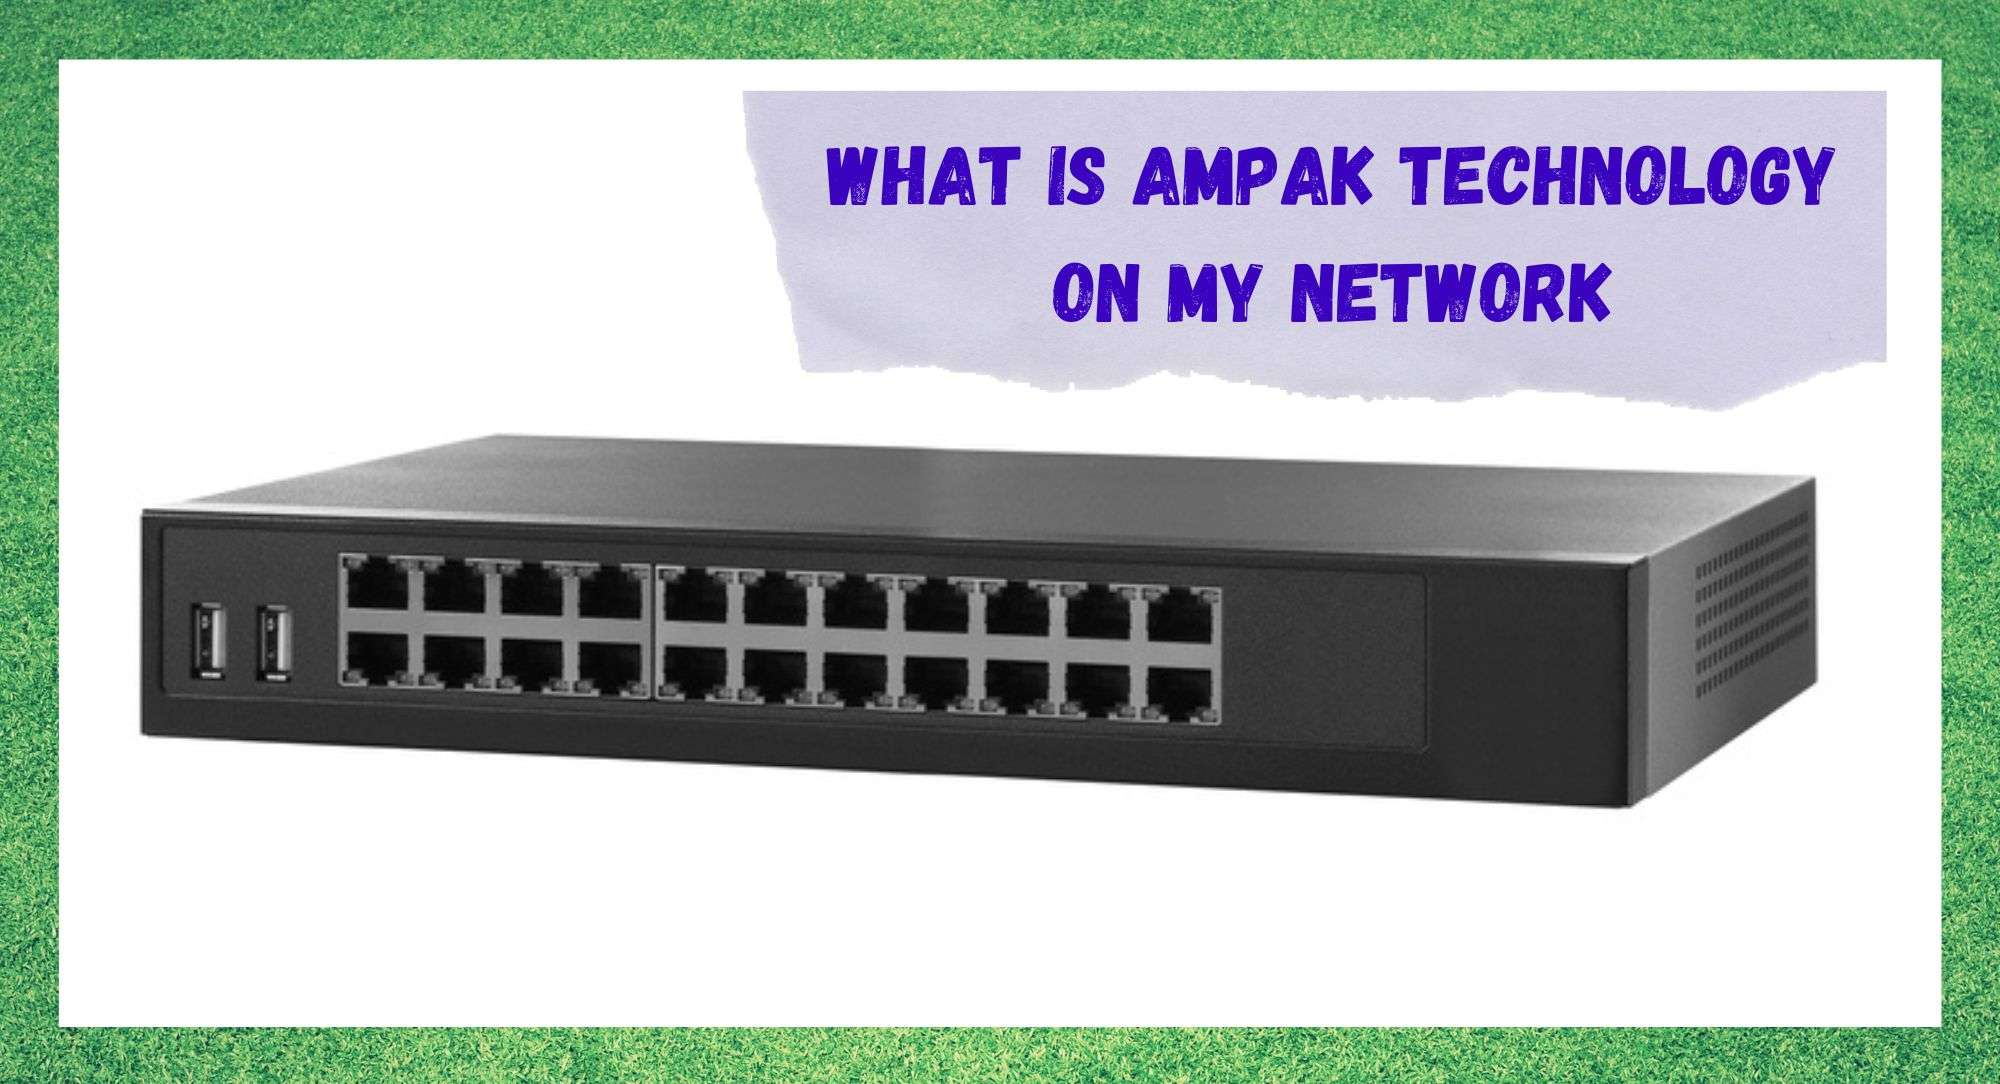 Ce este tehnologia AMPAK în rețeaua mea (Răspuns)